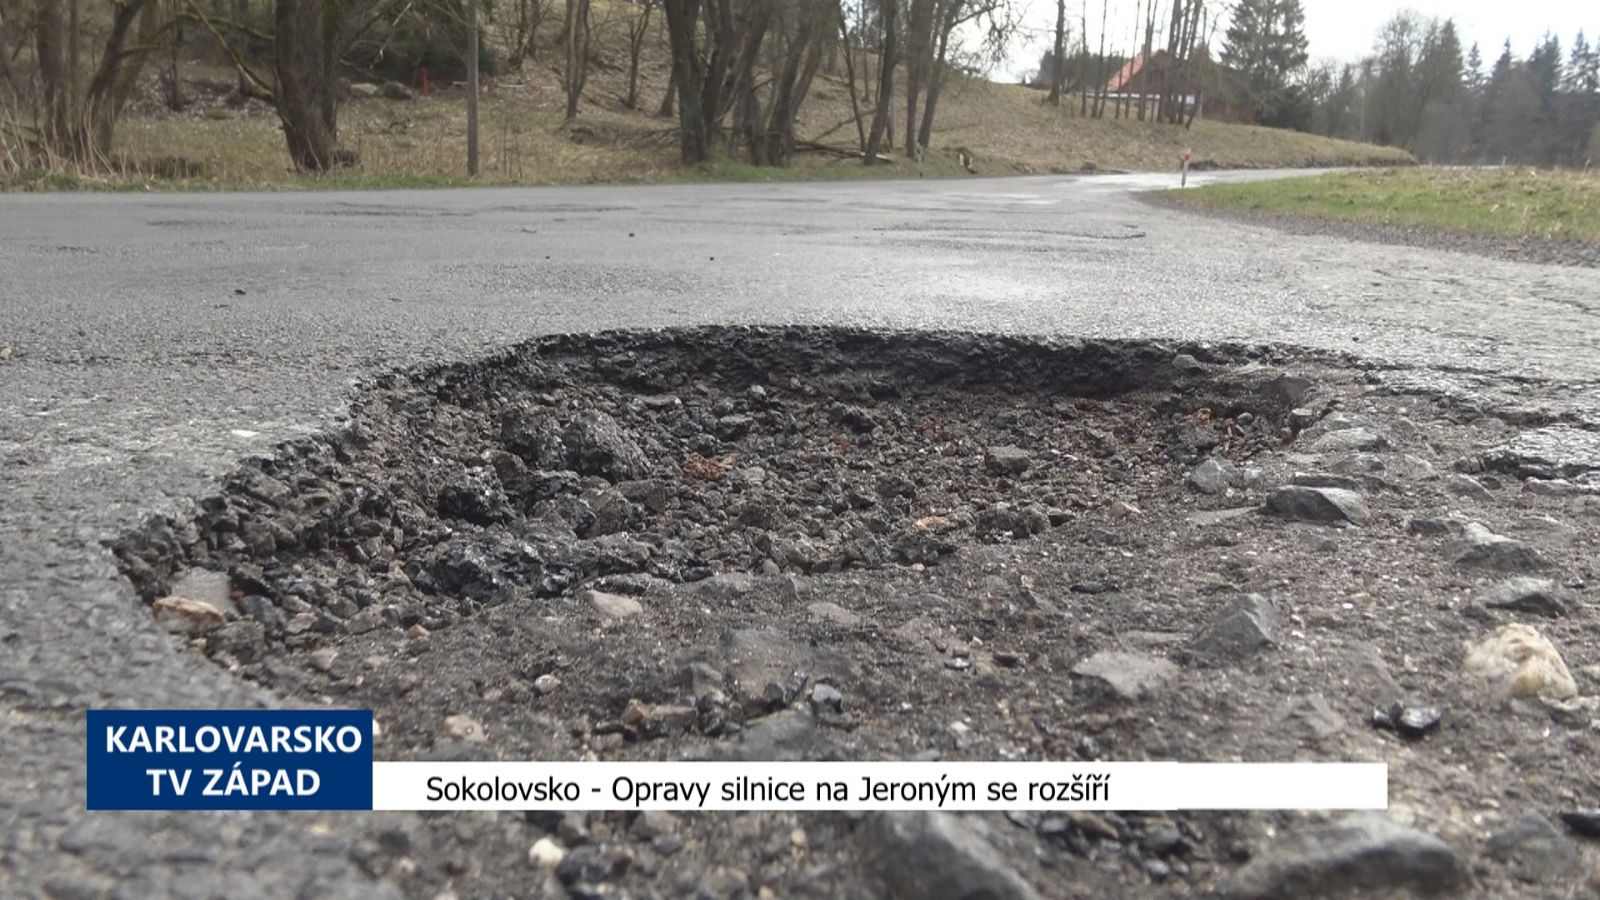 Sokolovsko: Opravy silnice na Jeroným se rozšíří (TV Západ)